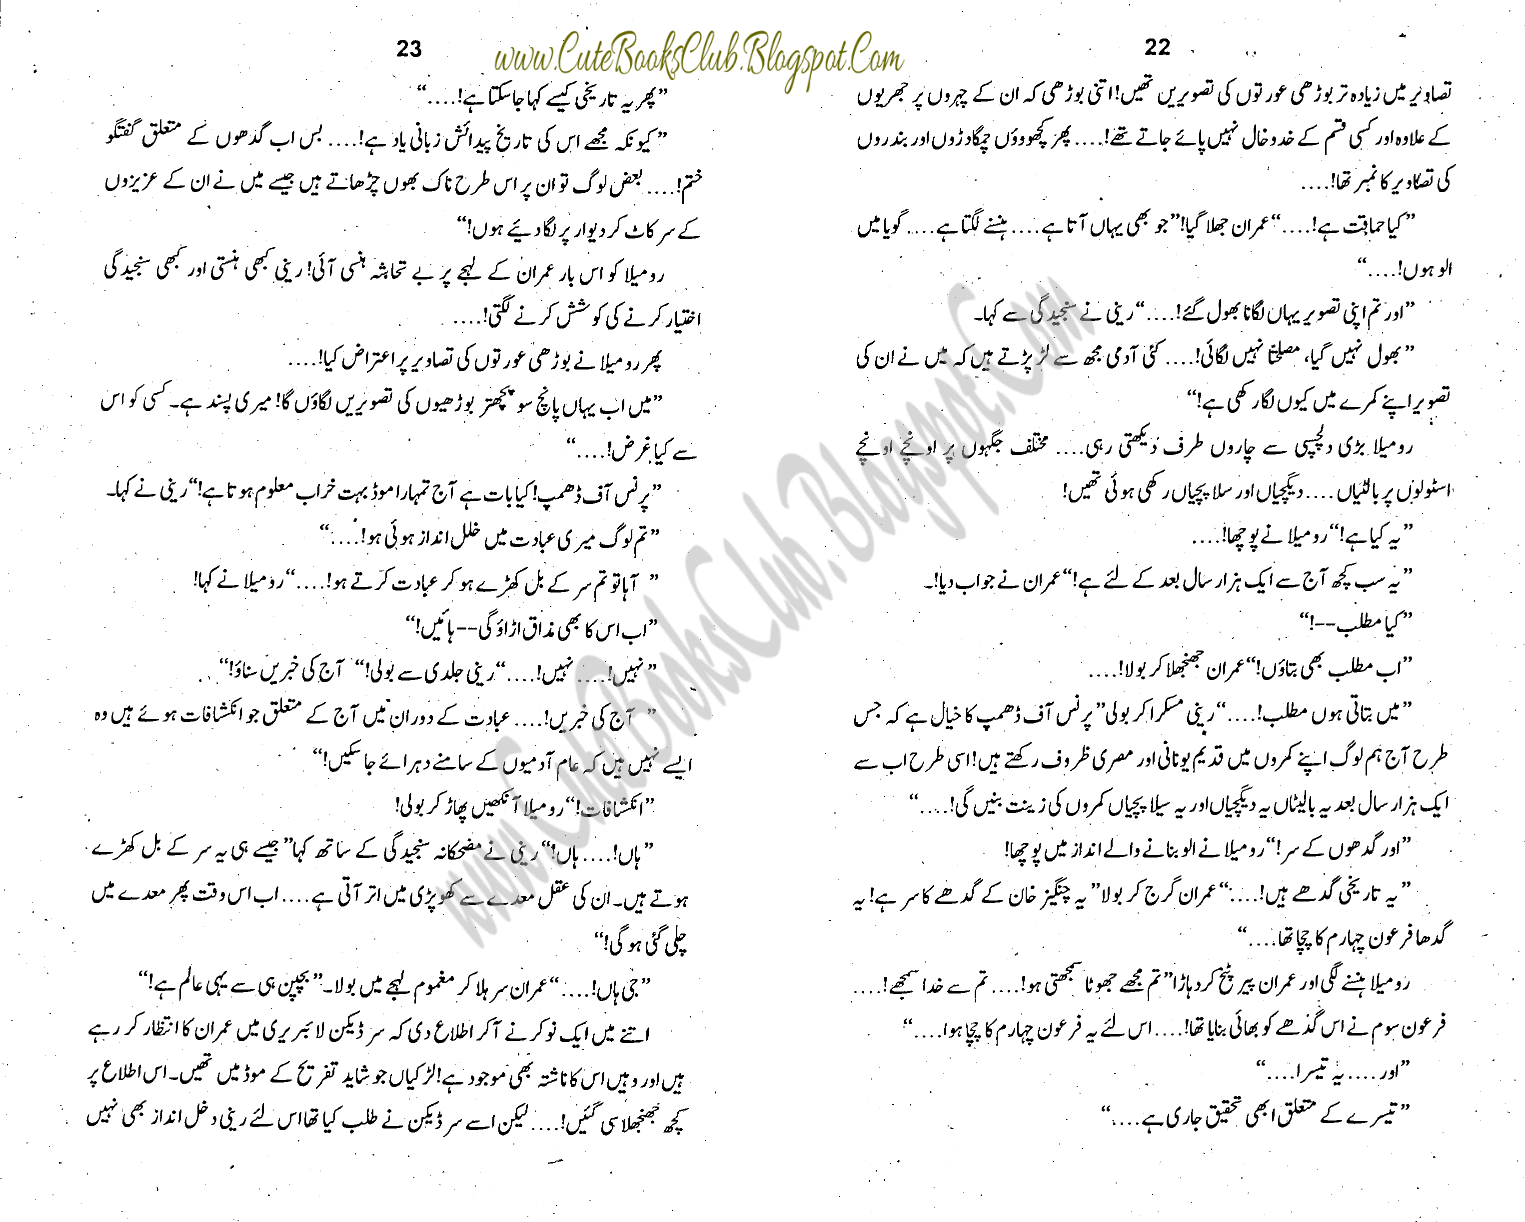 012-Lashon Ka Bazar, Imran Series by Ibne Safi (Urdu Novel)